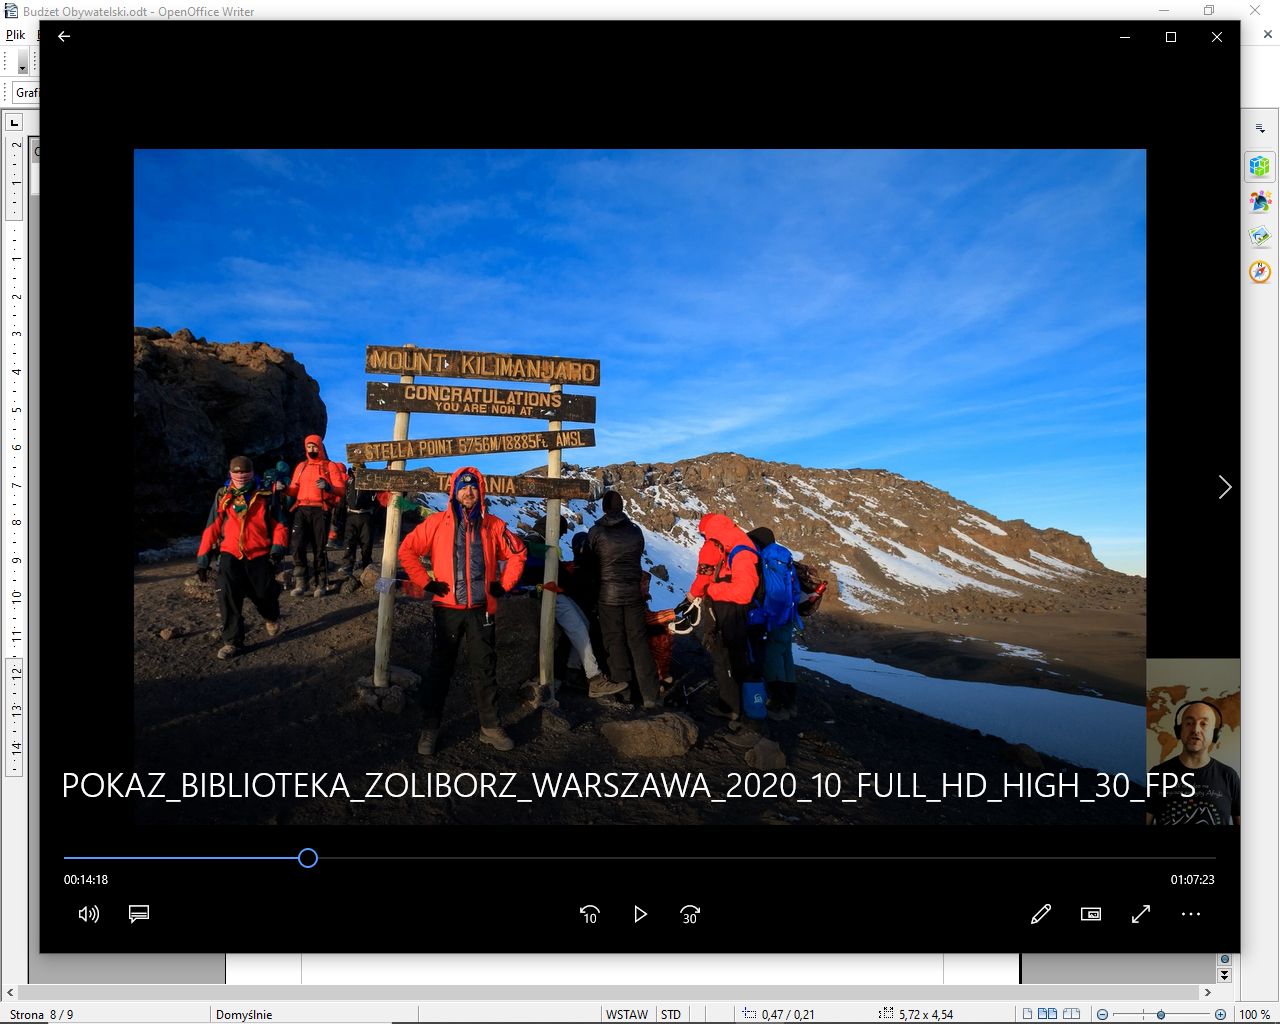 Pokaz slajdów Rpberta Gondka "W dodze na najwyższe szczyty Afryki"